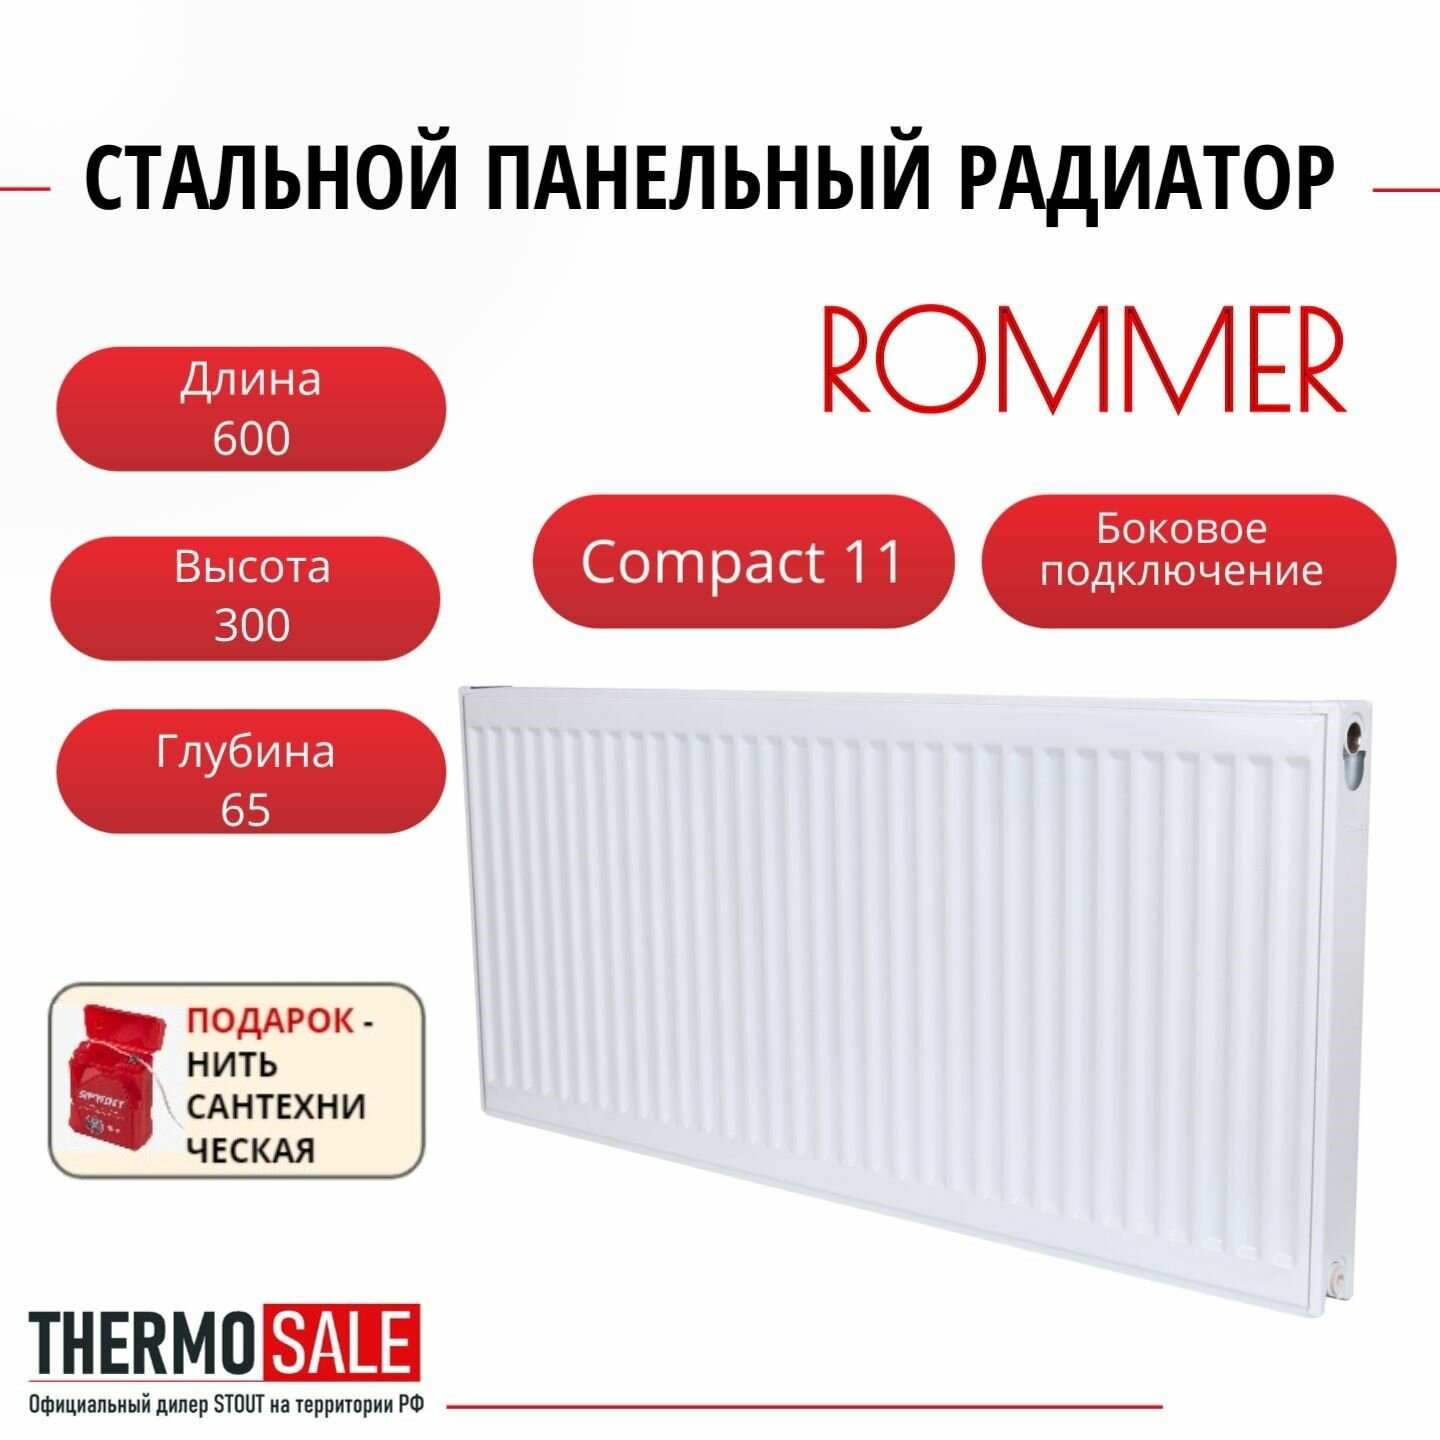 Радиатор стальной панельный ROMMER 300х600 боковое подключение Compact 11/300/600 Нить сантехническая